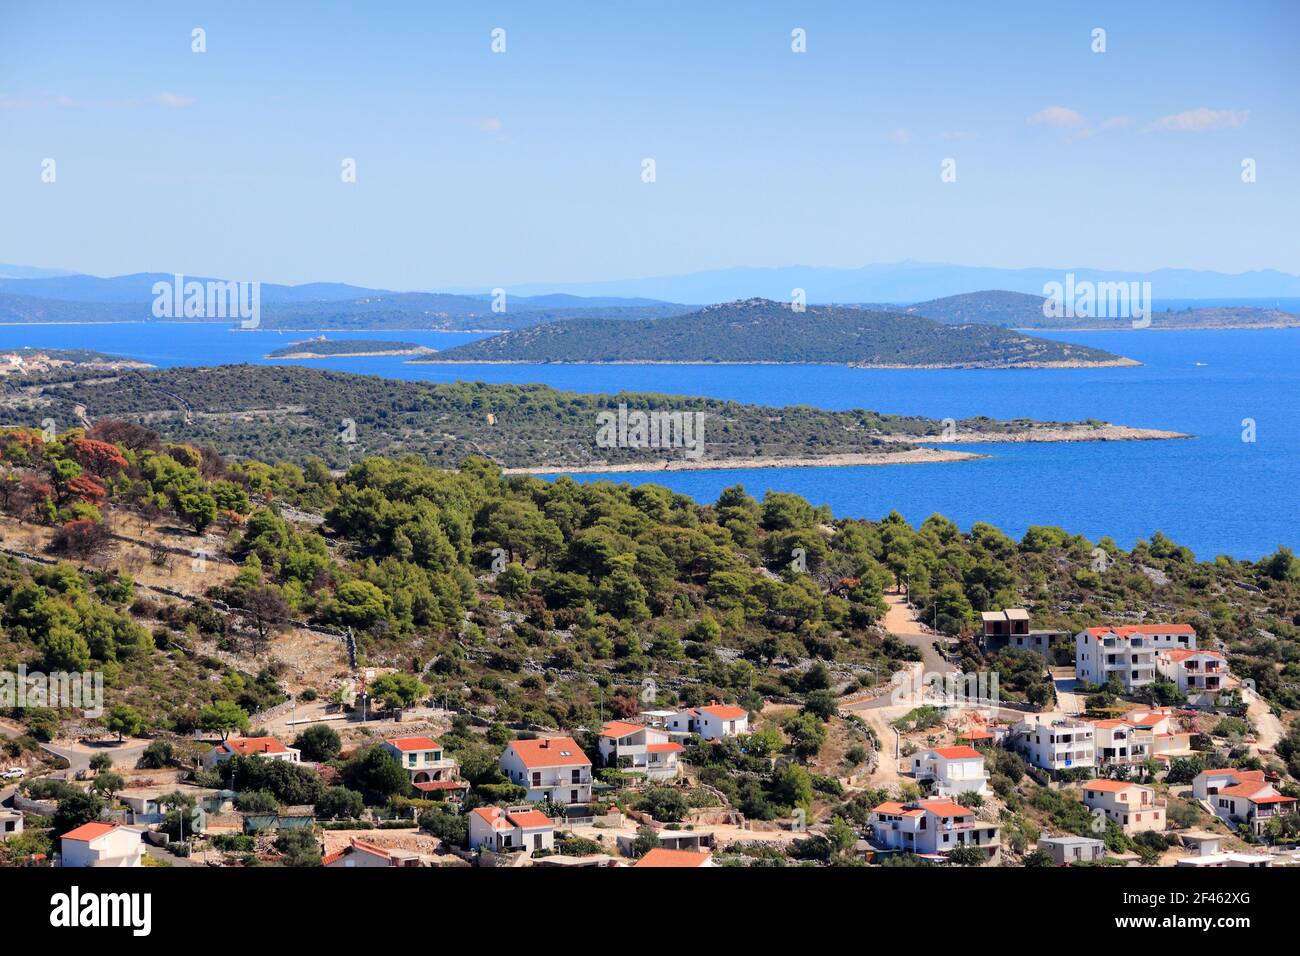 Kornati Islands and Croatian town. Razanj town in Dalmatia - beautiful Mediterranean coast landscape in Croatia. Adriatic Sea bay. Stock Photo